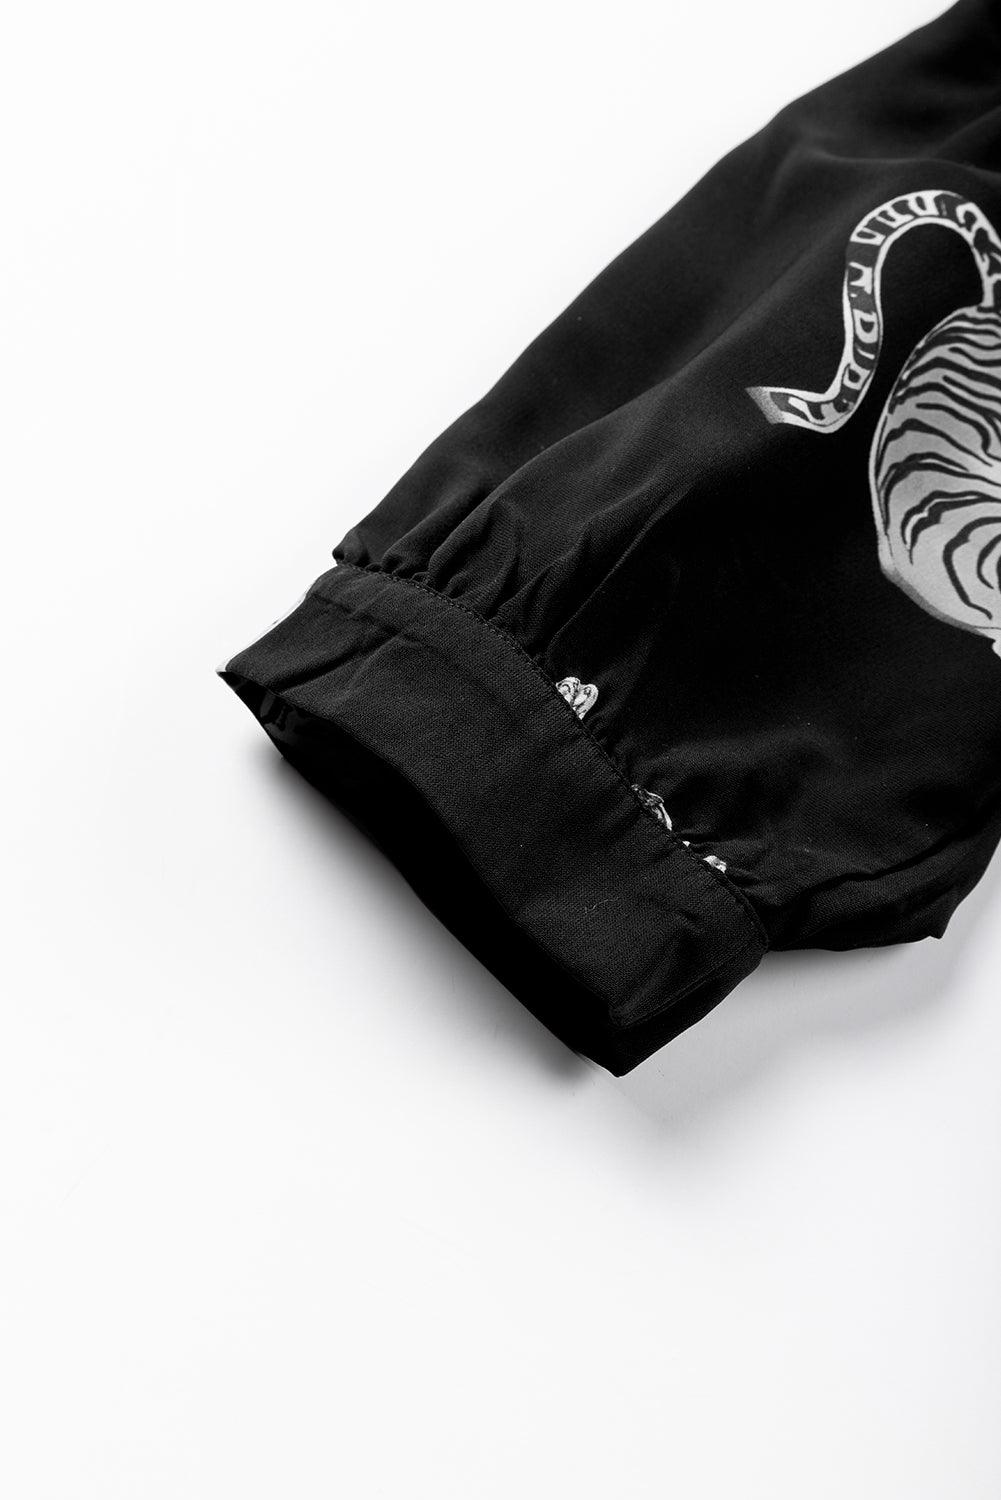 Camicia oversize con maniche a 3/4 e stampa tigre nera